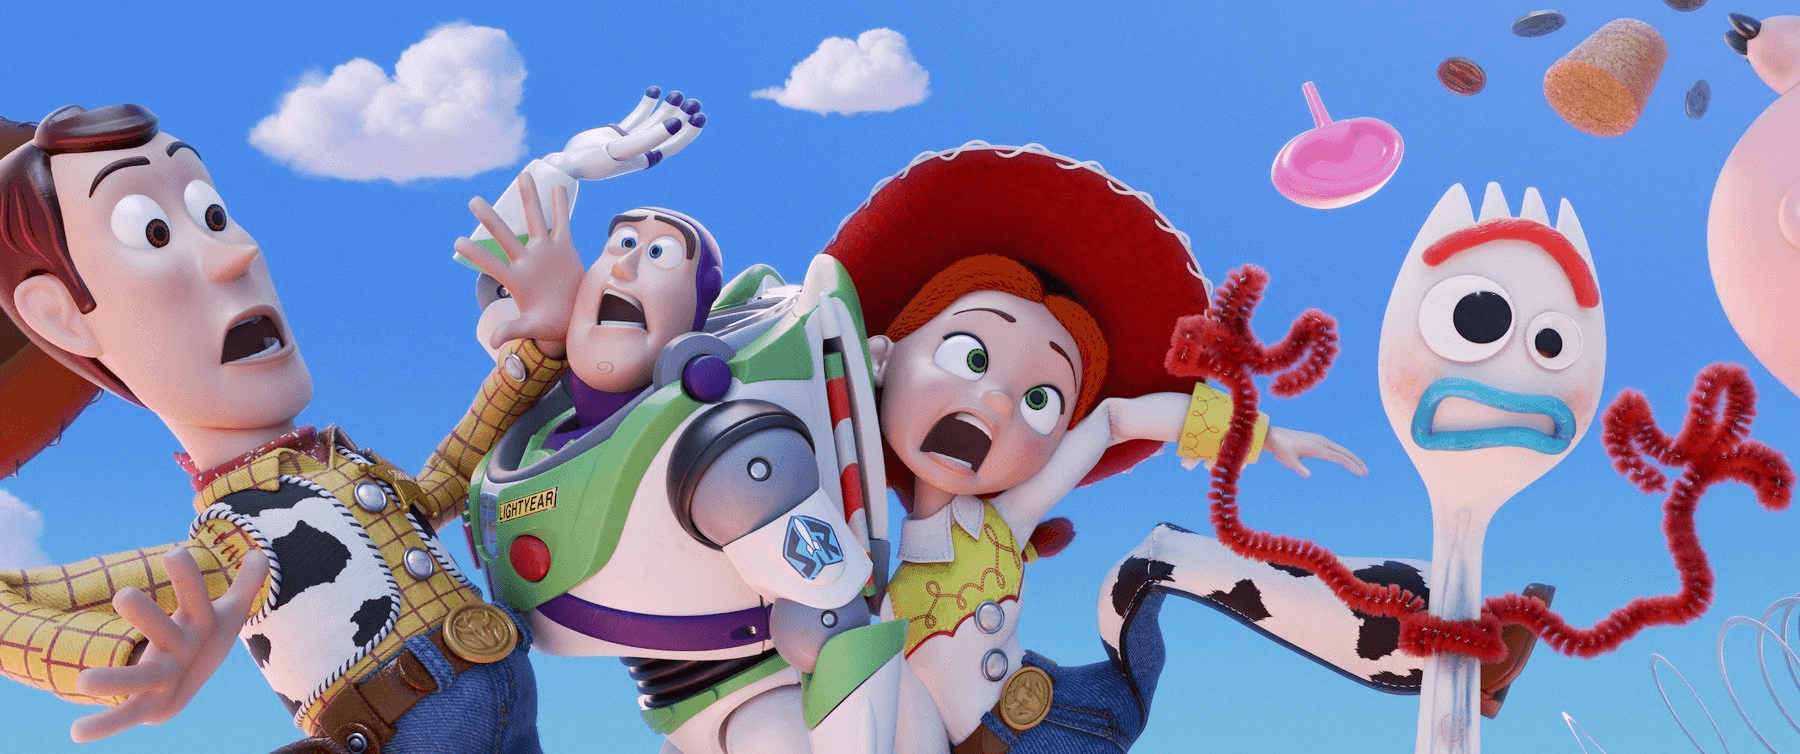 25 Weeks of Pixar: Week 25 Viewing (Toy Story 4 Review)